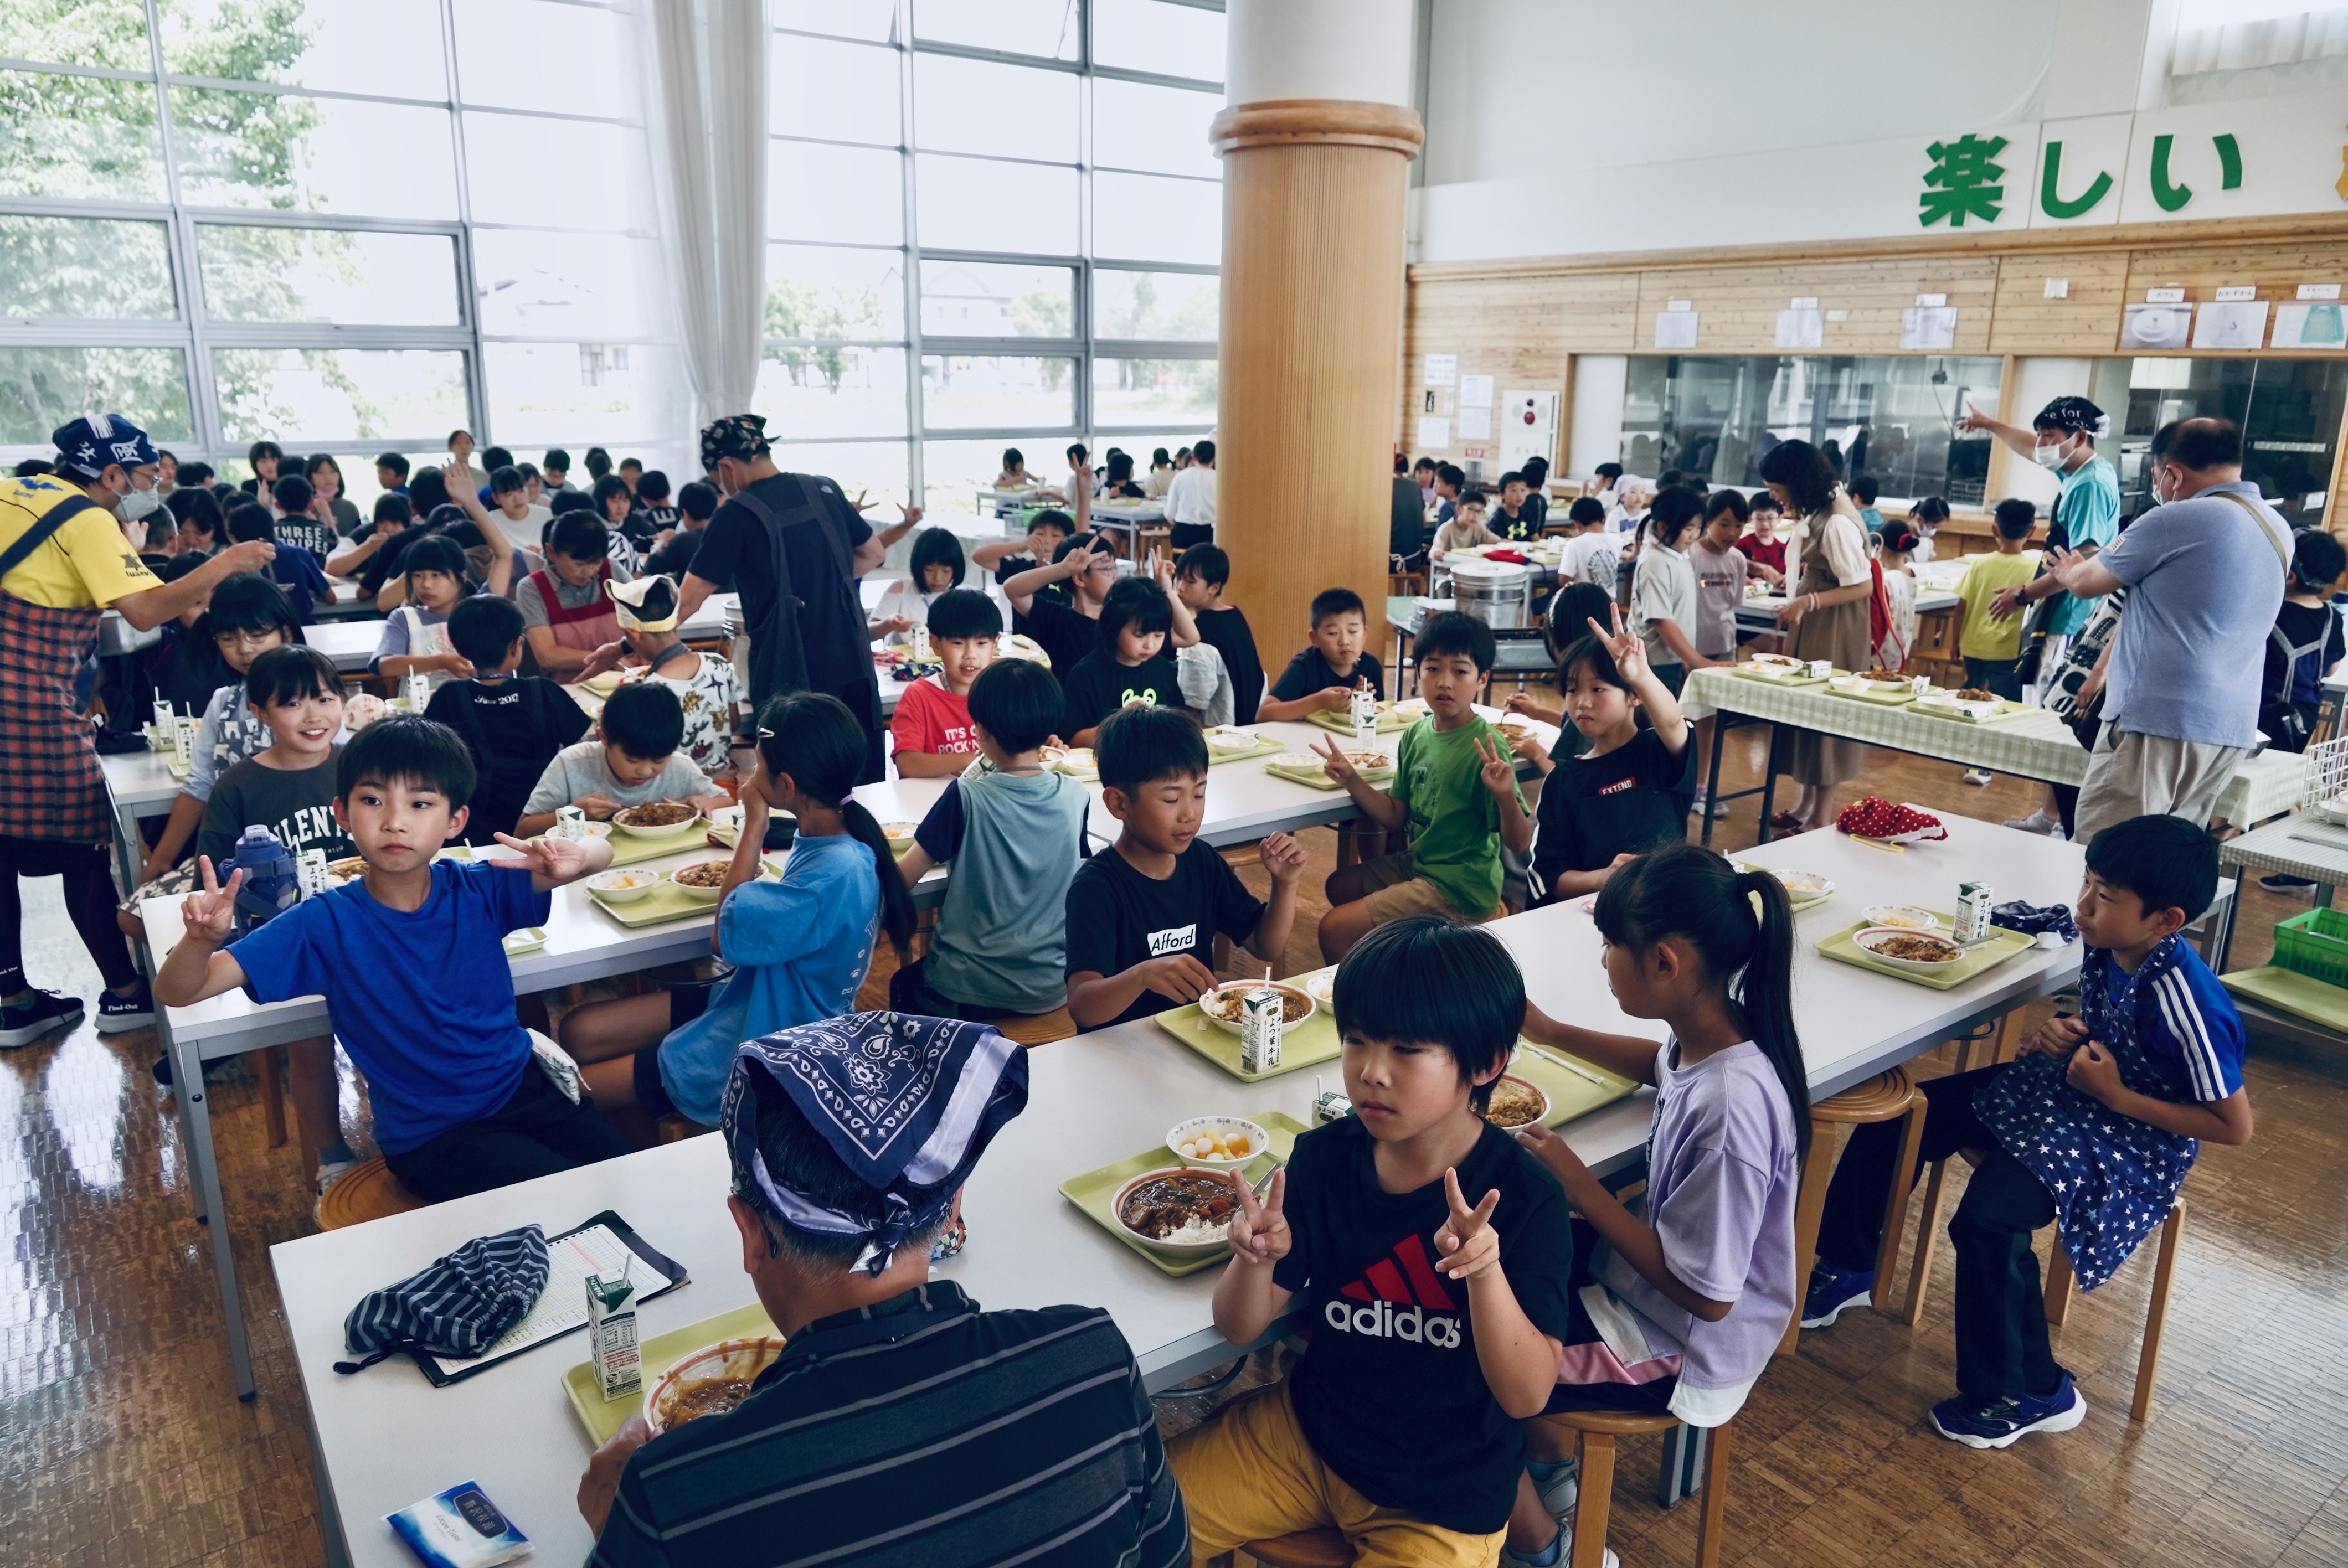 灃食團隊先前赴日觀摩日本小學食育經驗，鼓勵台灣校園運用簡單概念融入飲食教學。圖/灃食教育基金會提供